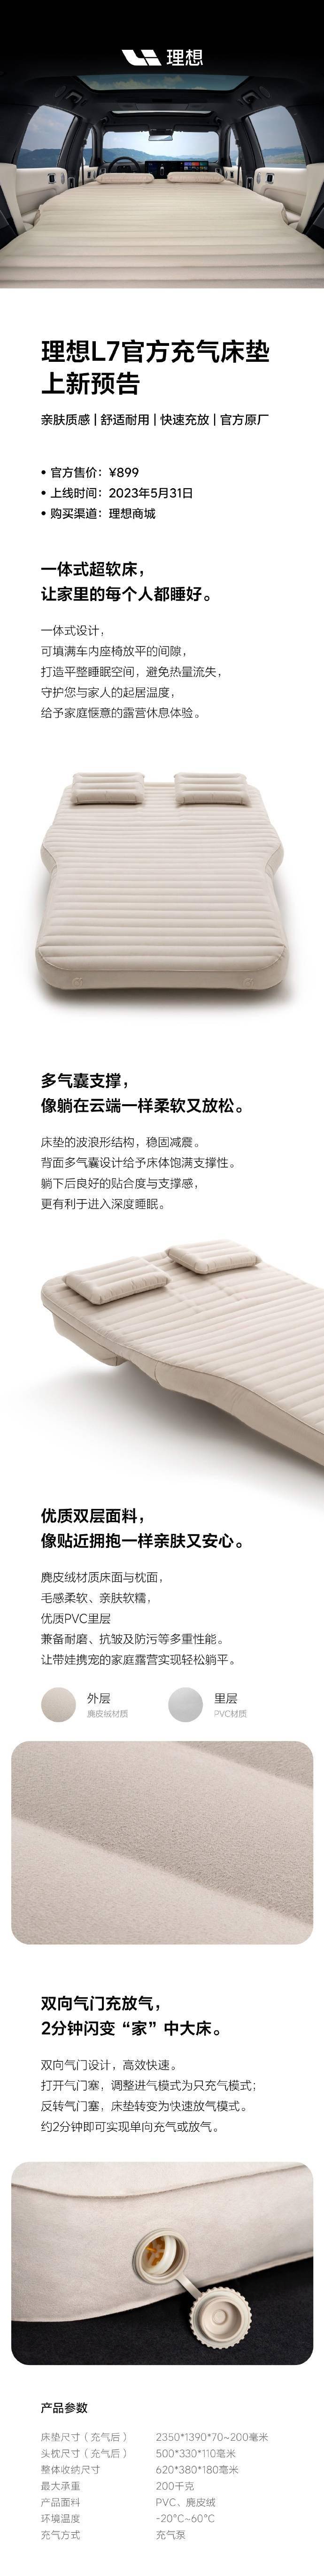 理想L7官方充气床垫5月31日上线理想商城 采用双向气门设计